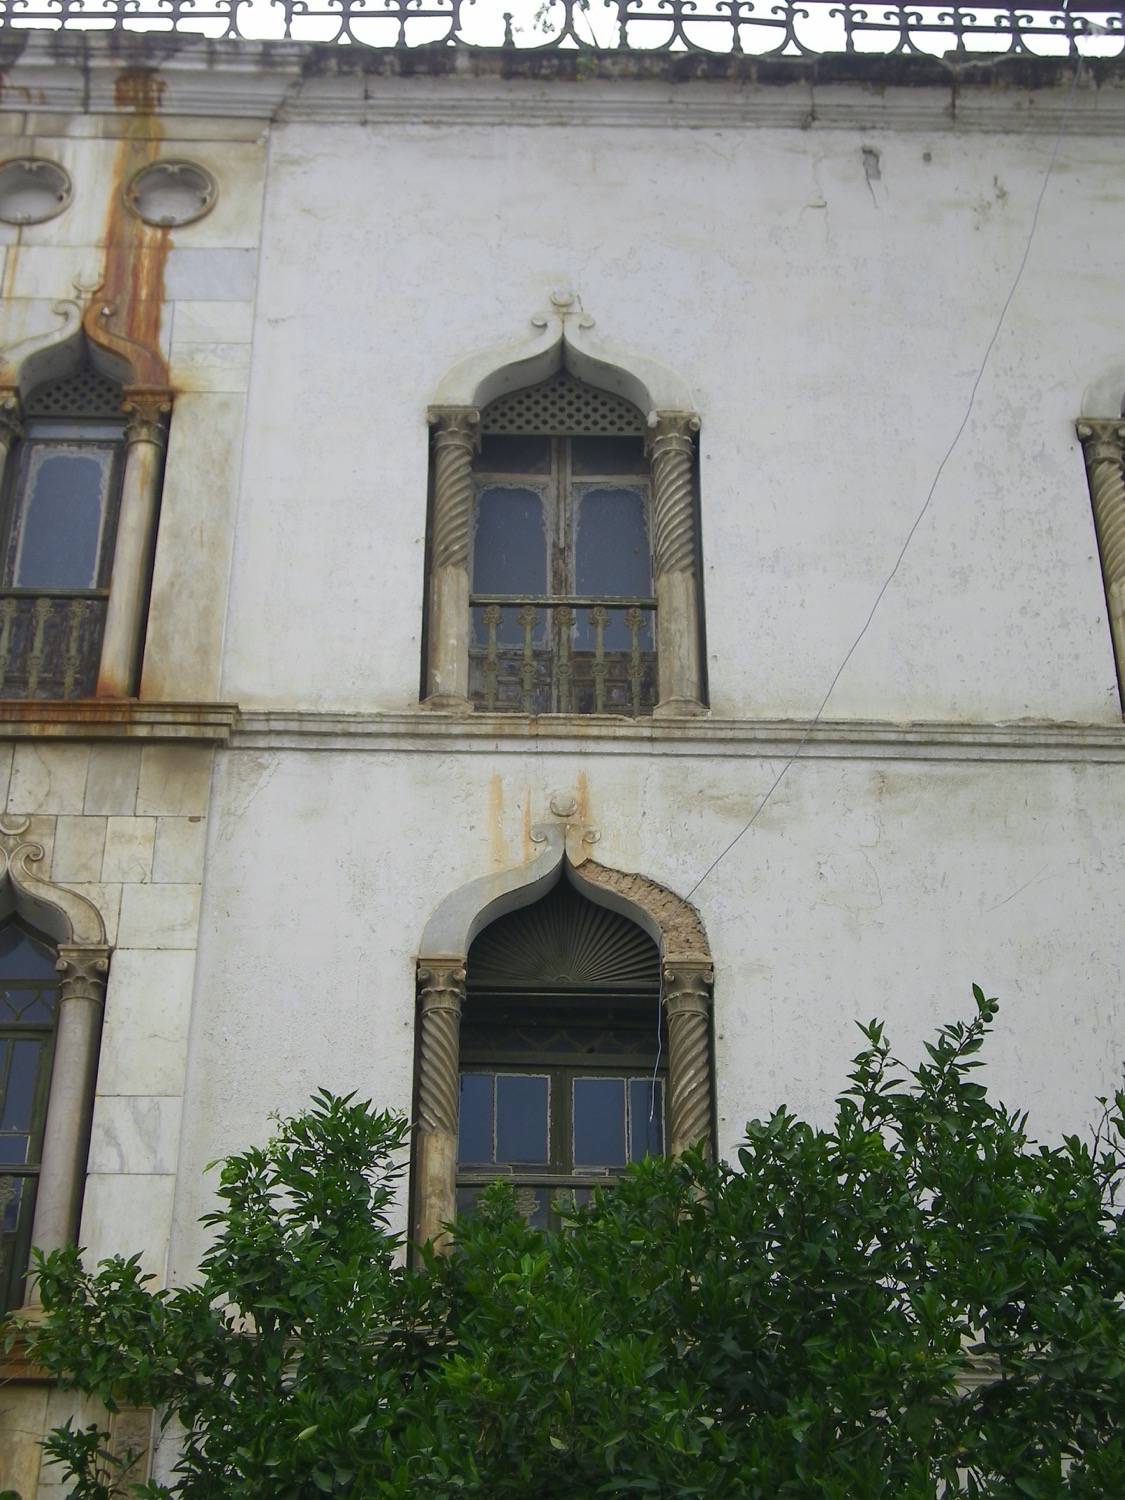 Close view of exterior windows